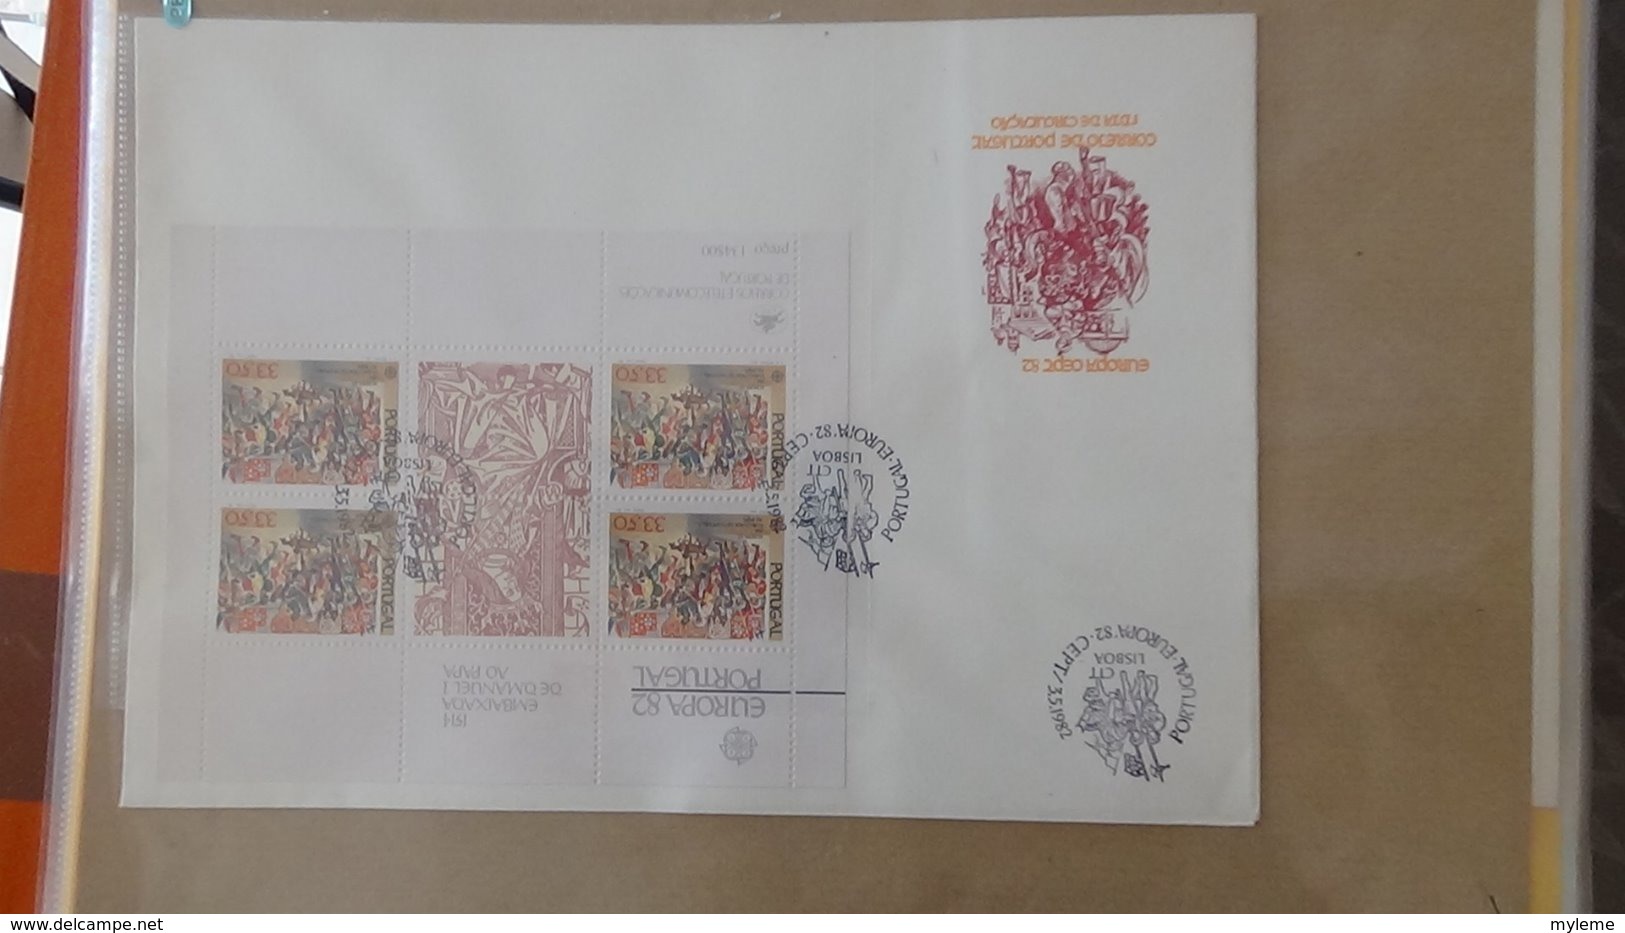 Dispersion d'une collection d'enveloppe 1er jour et autres dont 98 EUROPA entre 1978 et 1984